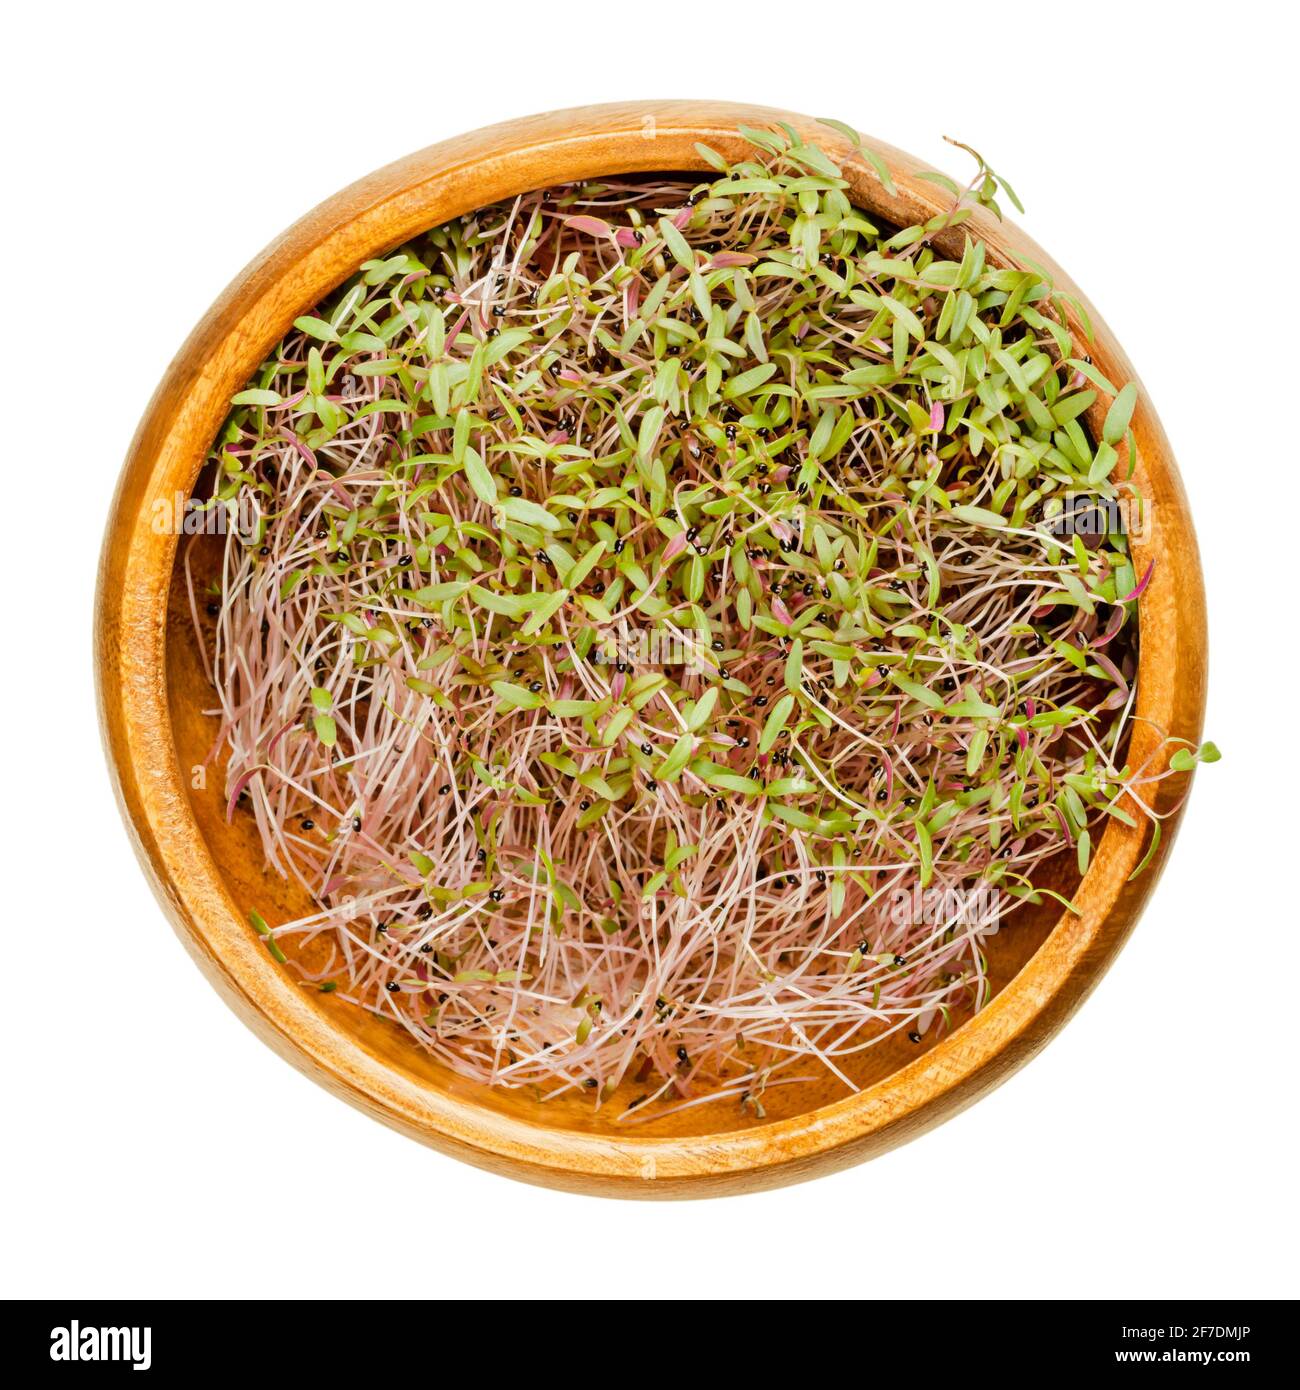 Amaranth-Sprossen in Holzschüssel. Bereit Amaranthus Microgreens zu essen. Grüne Triebe, Sämlinge, junge Pflanzen und Blätter, als Beilage oder Zutat verwendet. Stockfoto